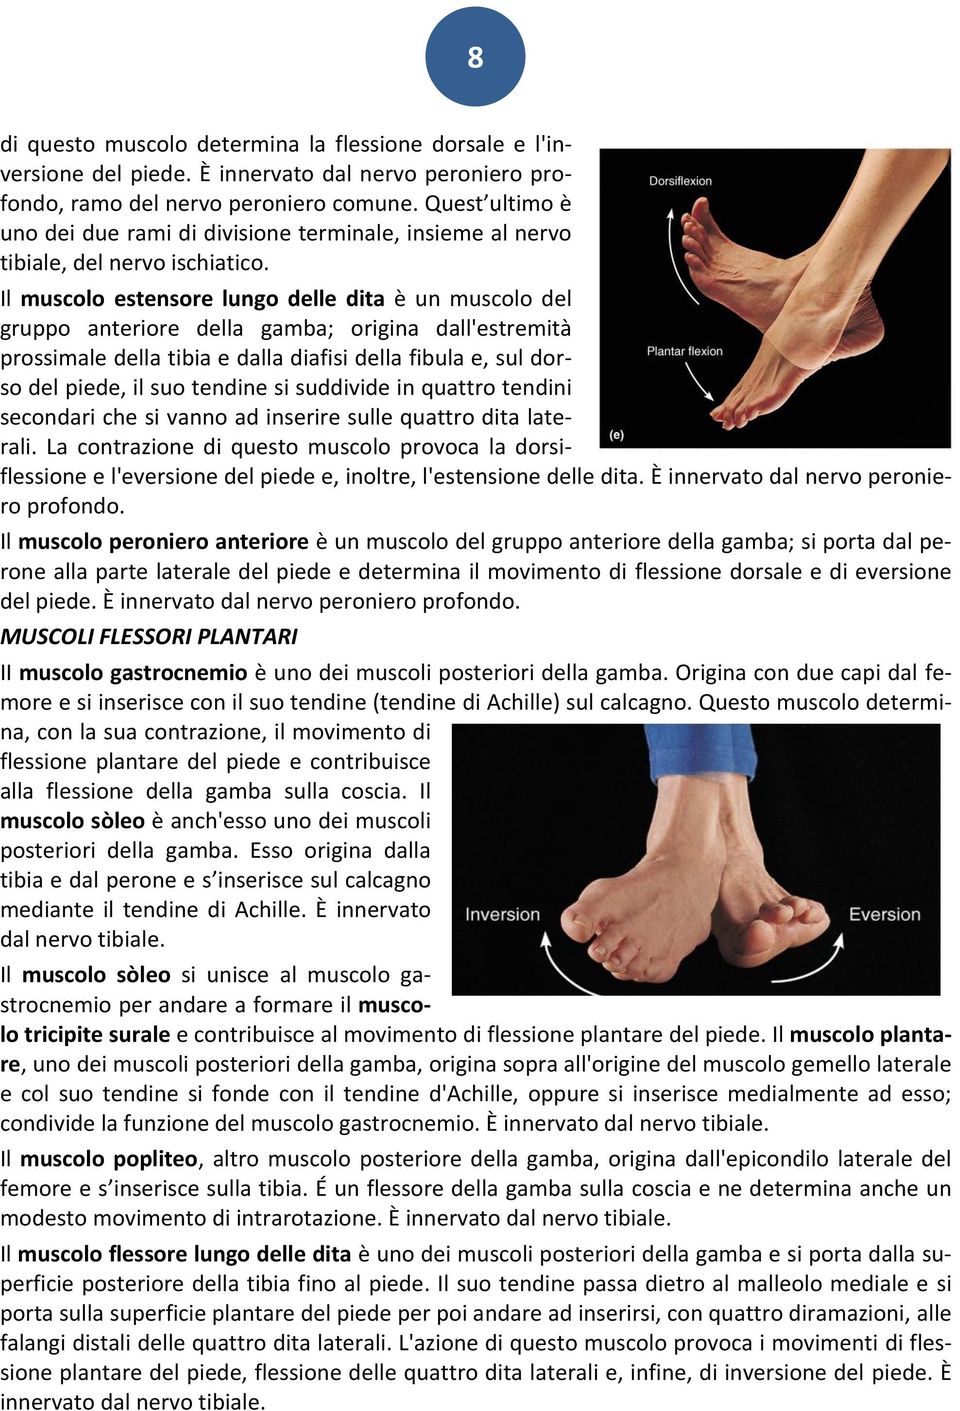 Il muscolo estensore lungo delle dita è un muscolo del gruppo anteriore della gamba; origina dall'estremità prossimale della tibia e dalla diafisi della fibula e, sul dorso del piede, il suo tendine